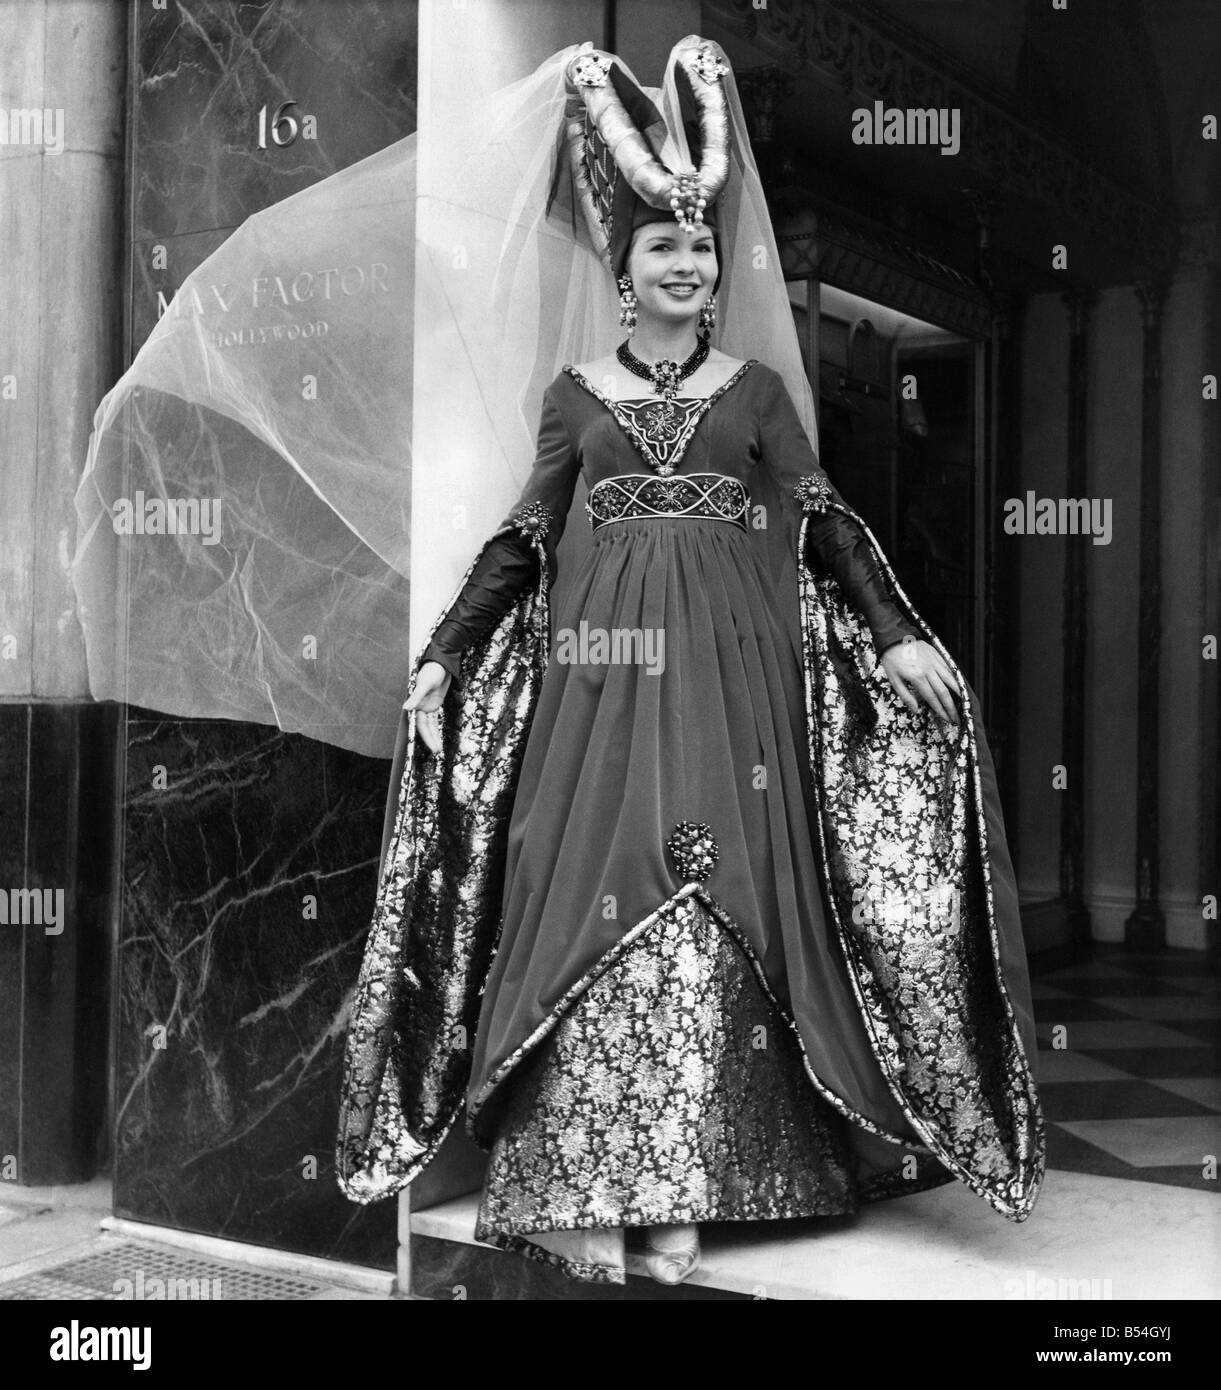 Actrice non nommés en dehors de la Max Factor des bureaux à Hollywood habillés en costume de femme noble médiévale. Juillet 1962 P011099 Banque D'Images